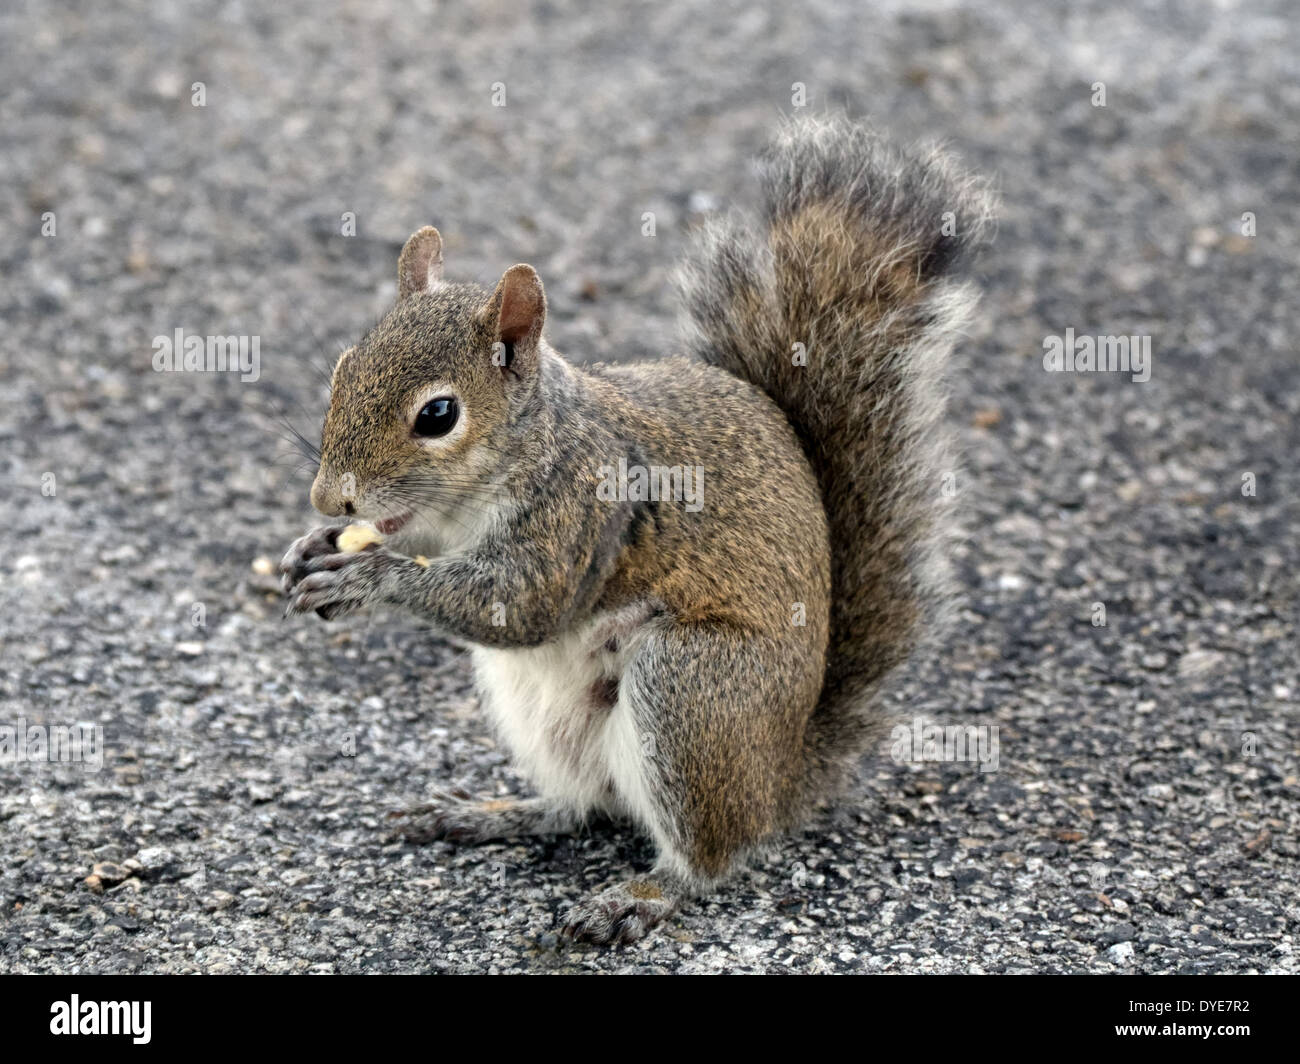 Snacking écureuil sur un morceau de pain dans un parking. Banque D'Images